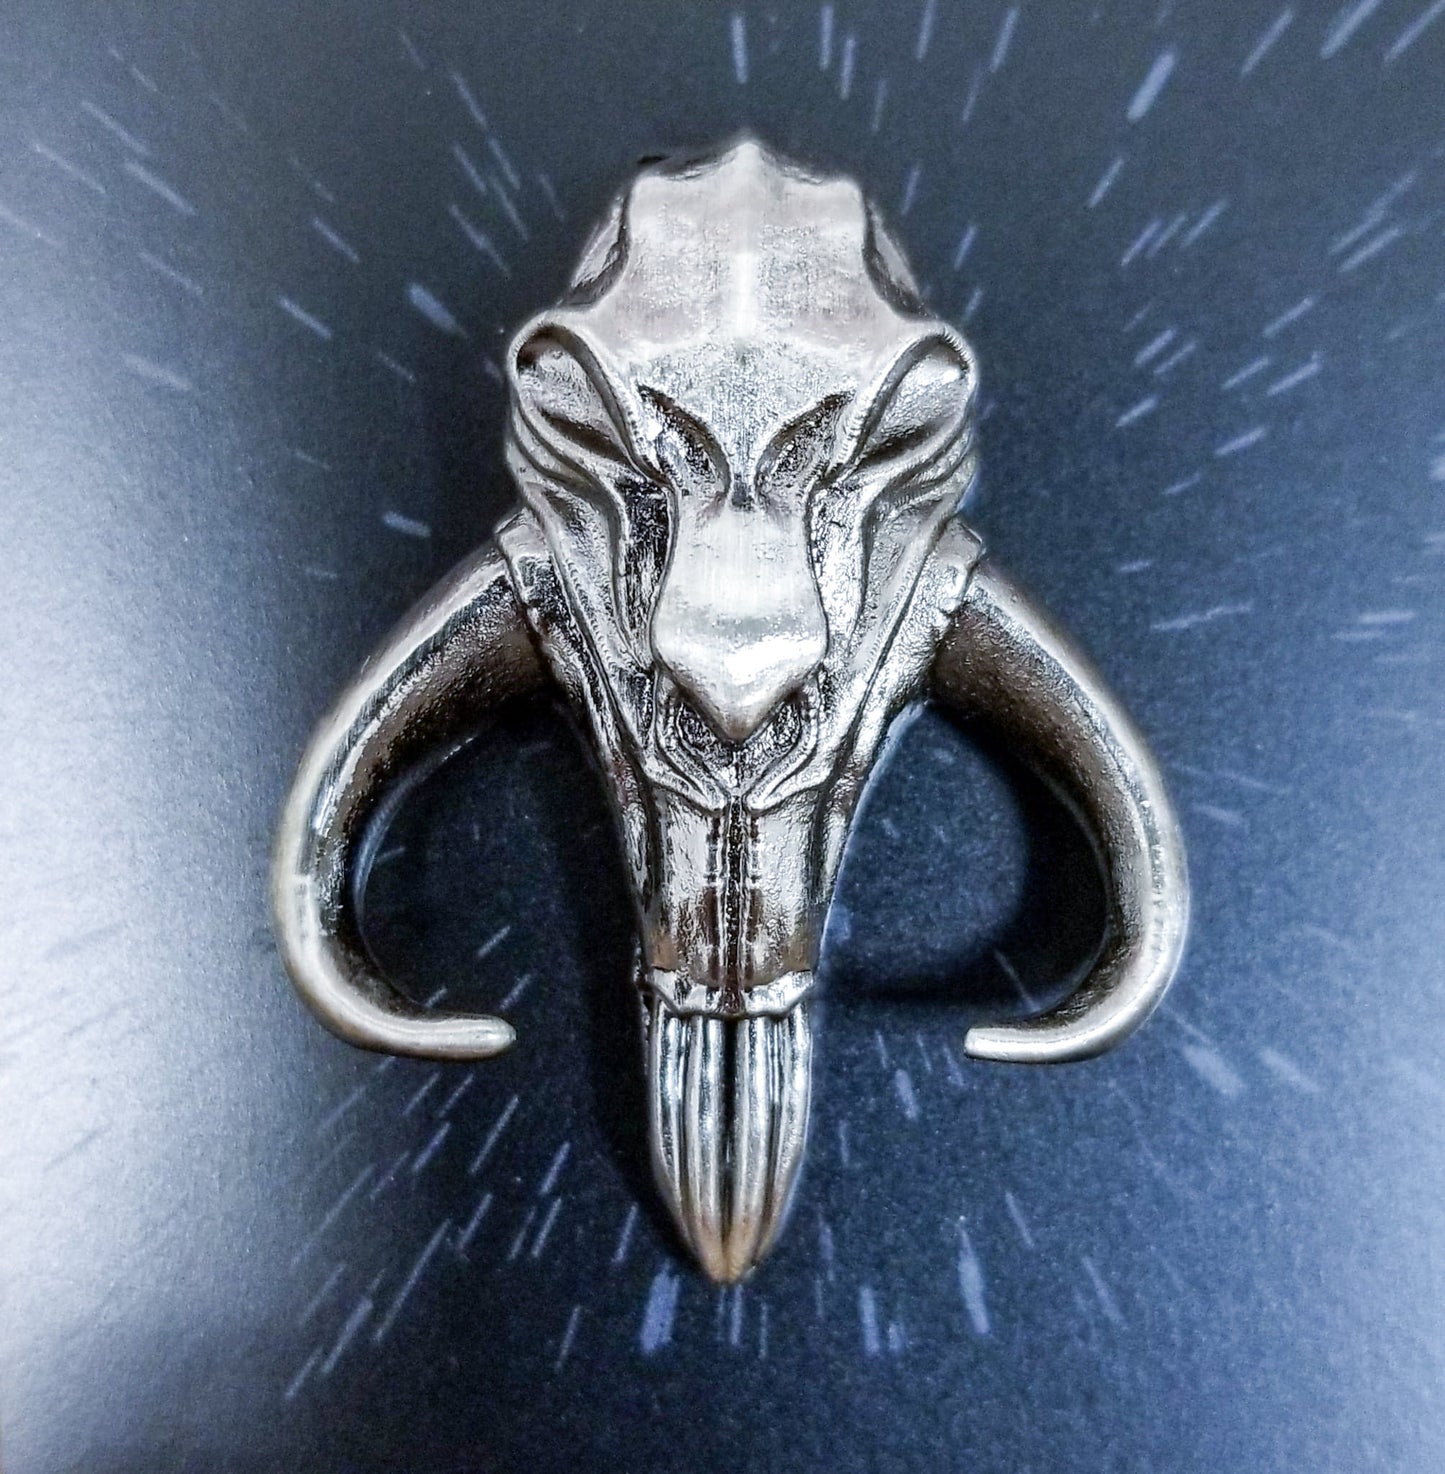 Mandalorian Mythosaur Star Wars Pin